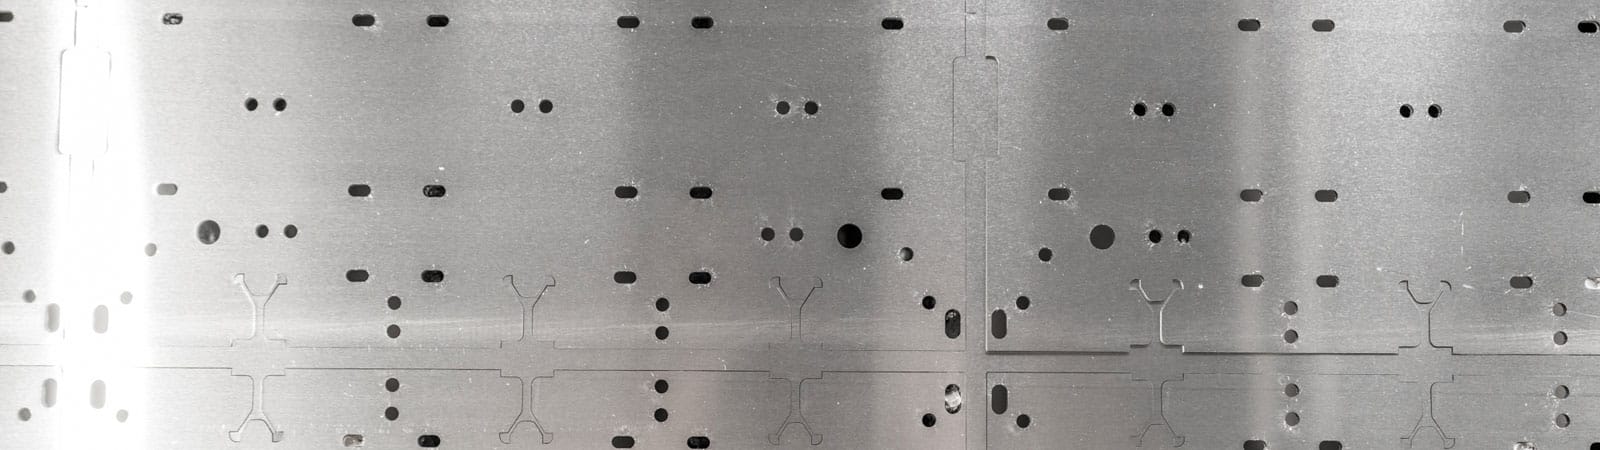 CNC-Laserschneiden, Laserschneiden